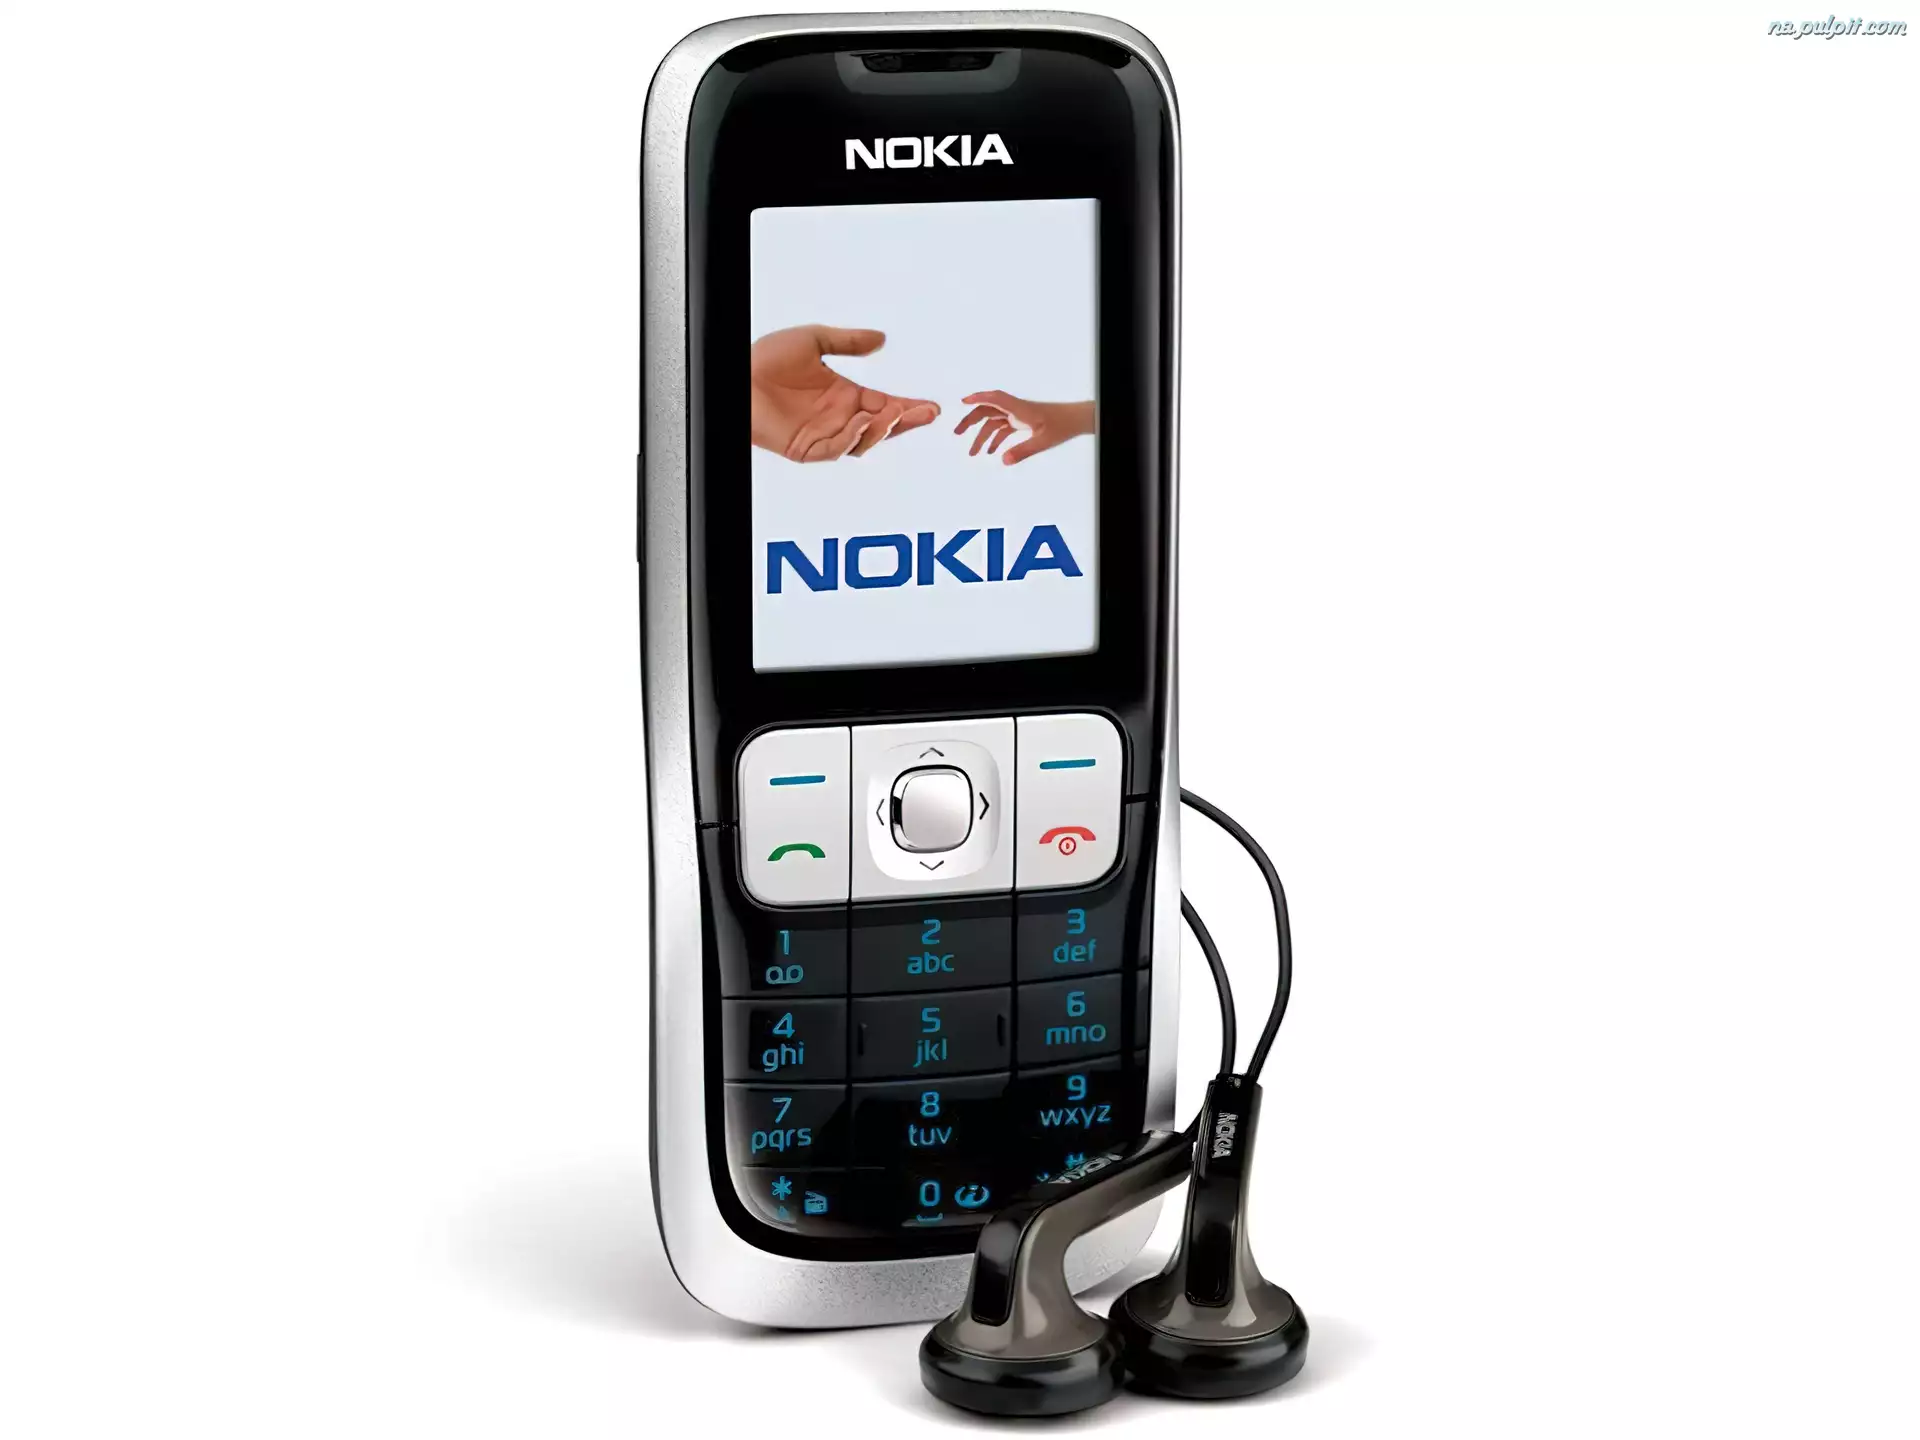 Słuchawki, Nokia 2600, Czarna